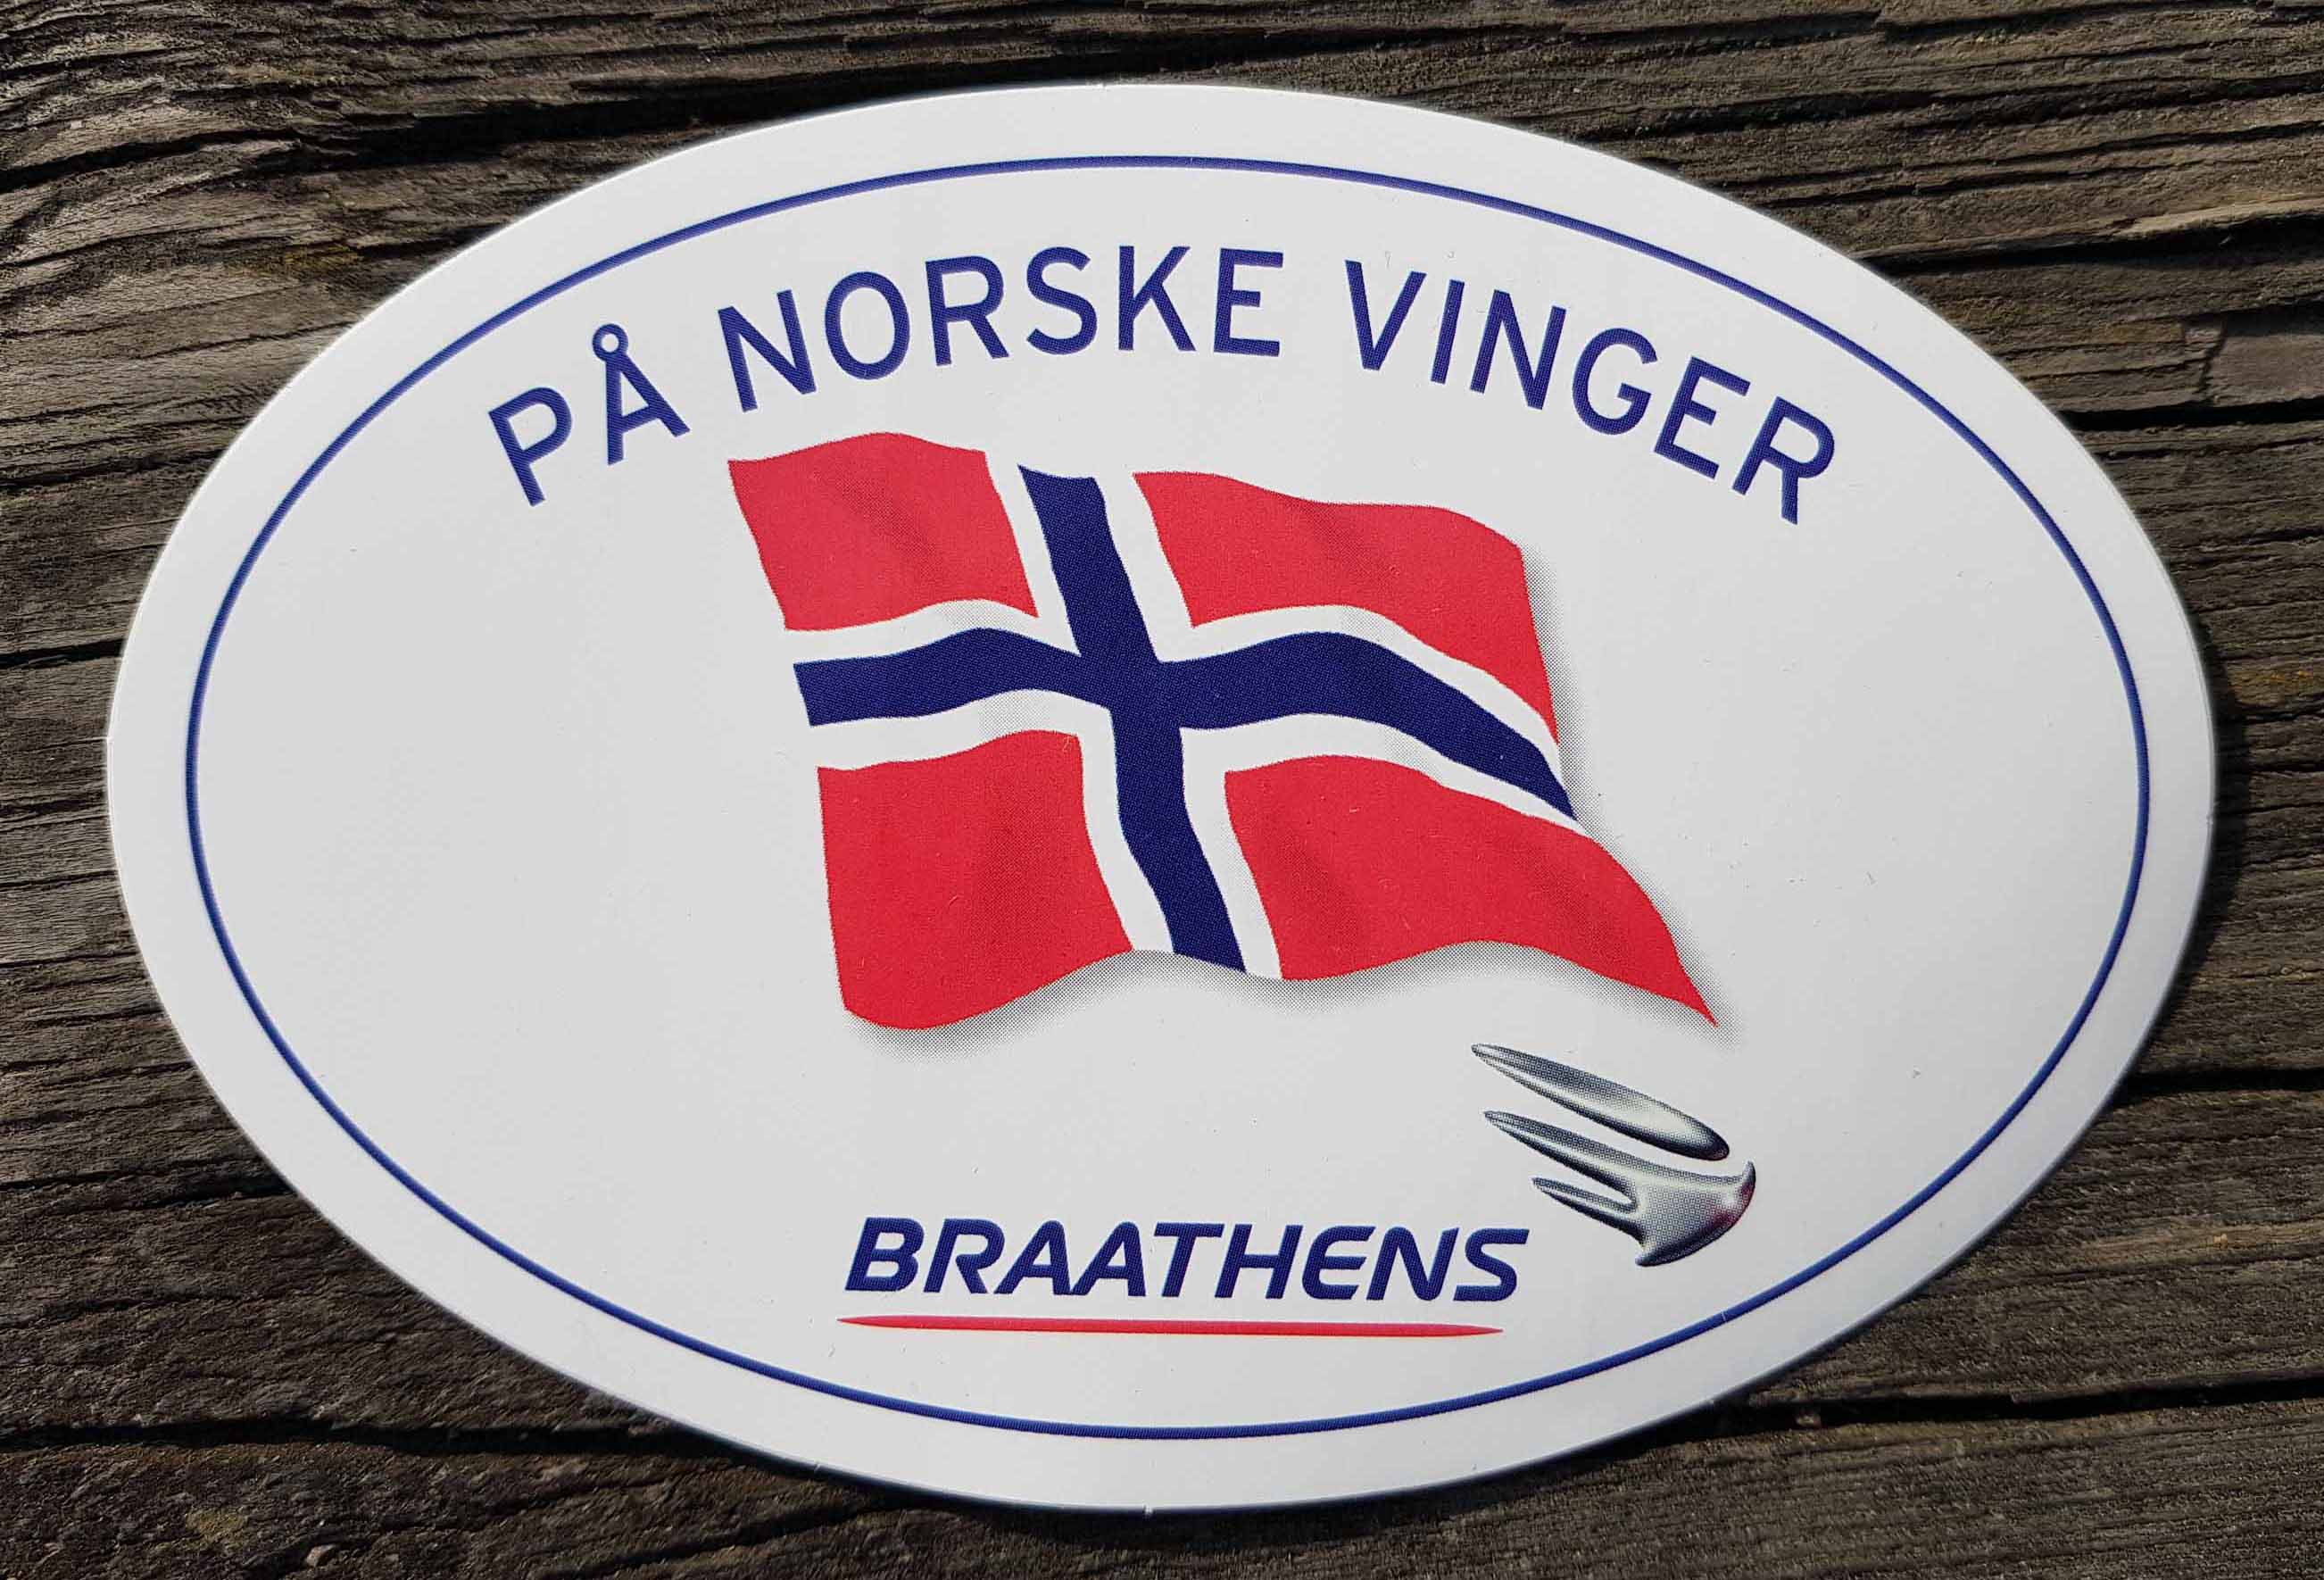 Braathens-stickers På Norske vinger